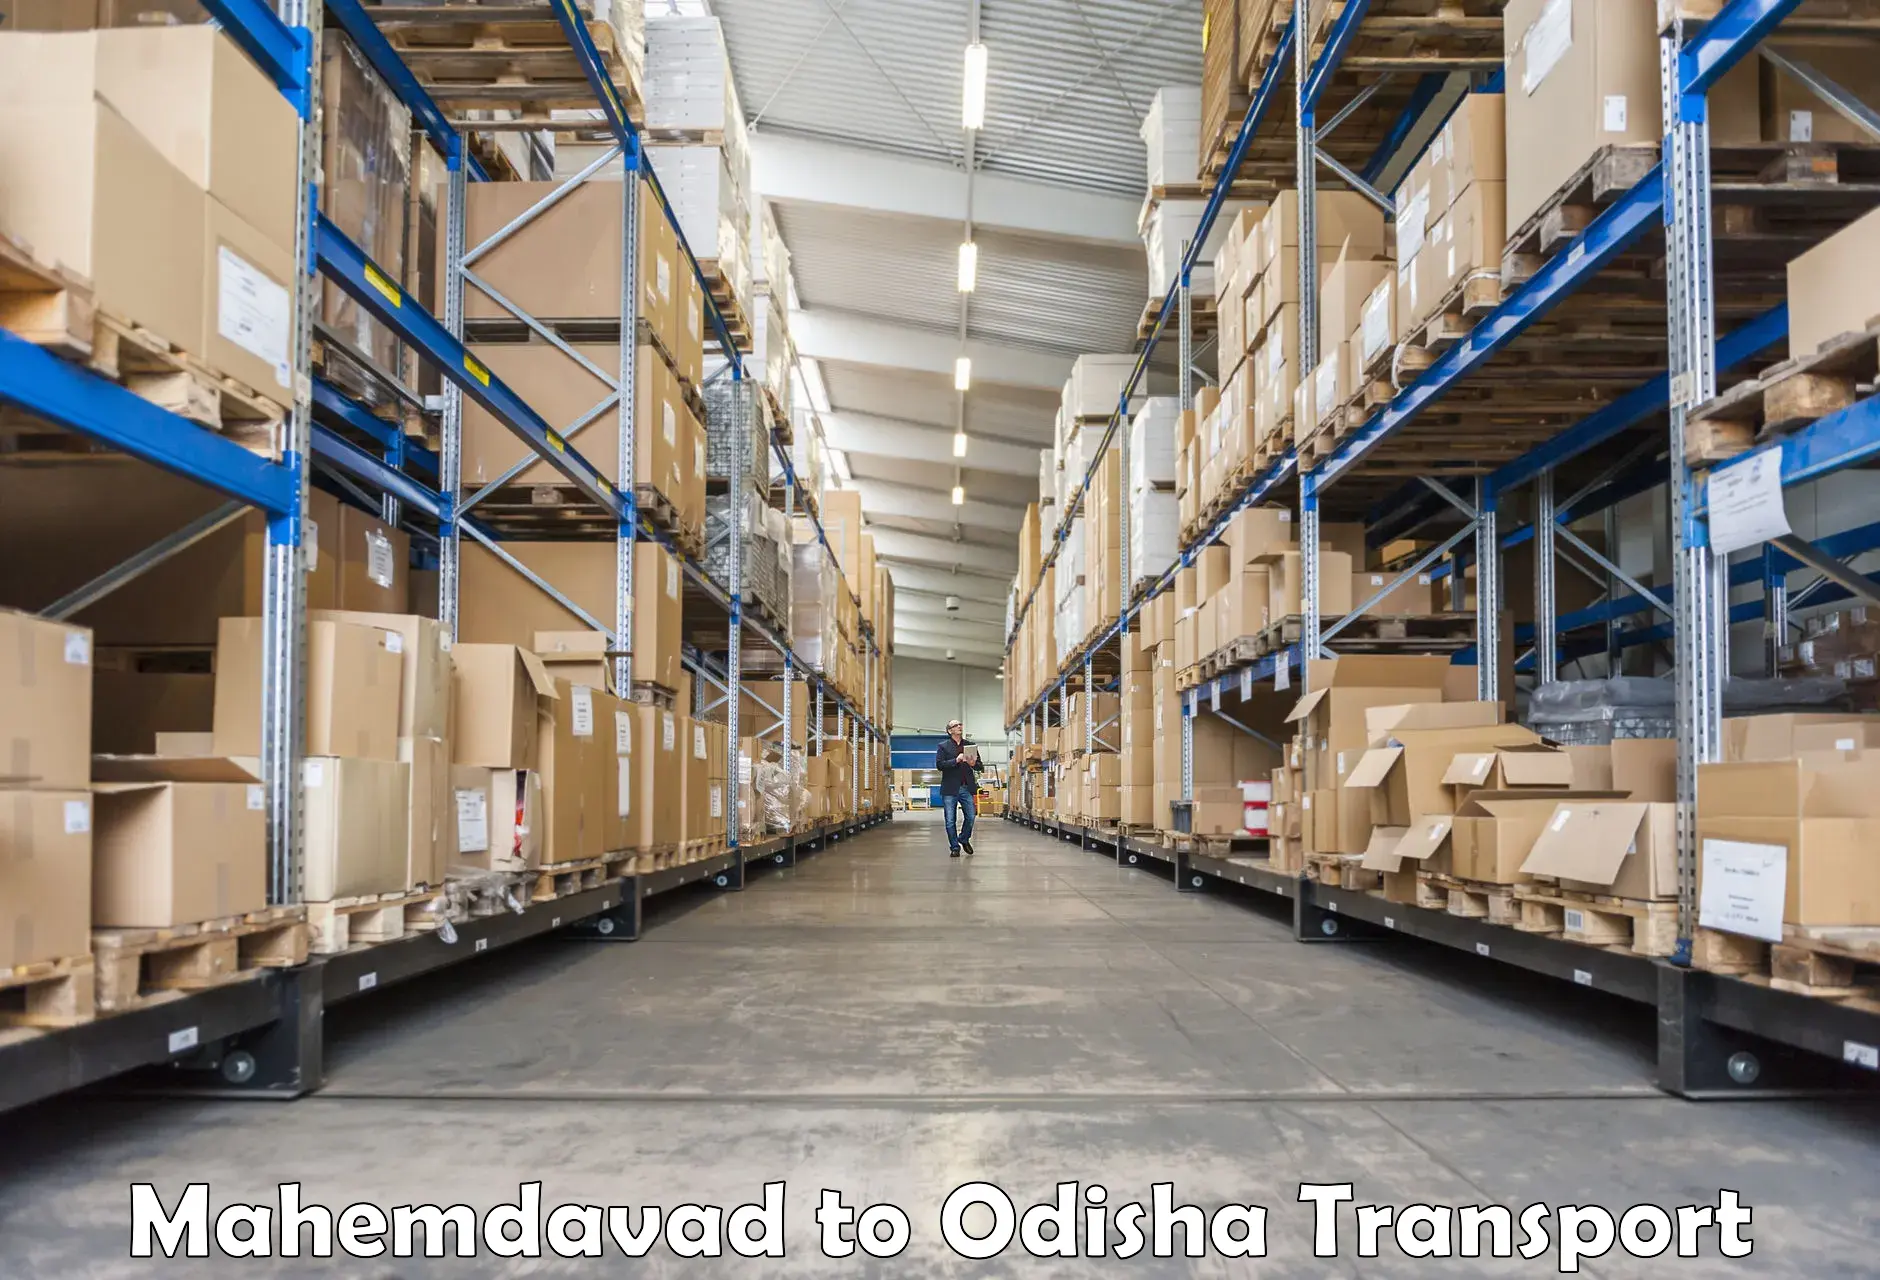 Commercial transport service Mahemdavad to Sundargarh